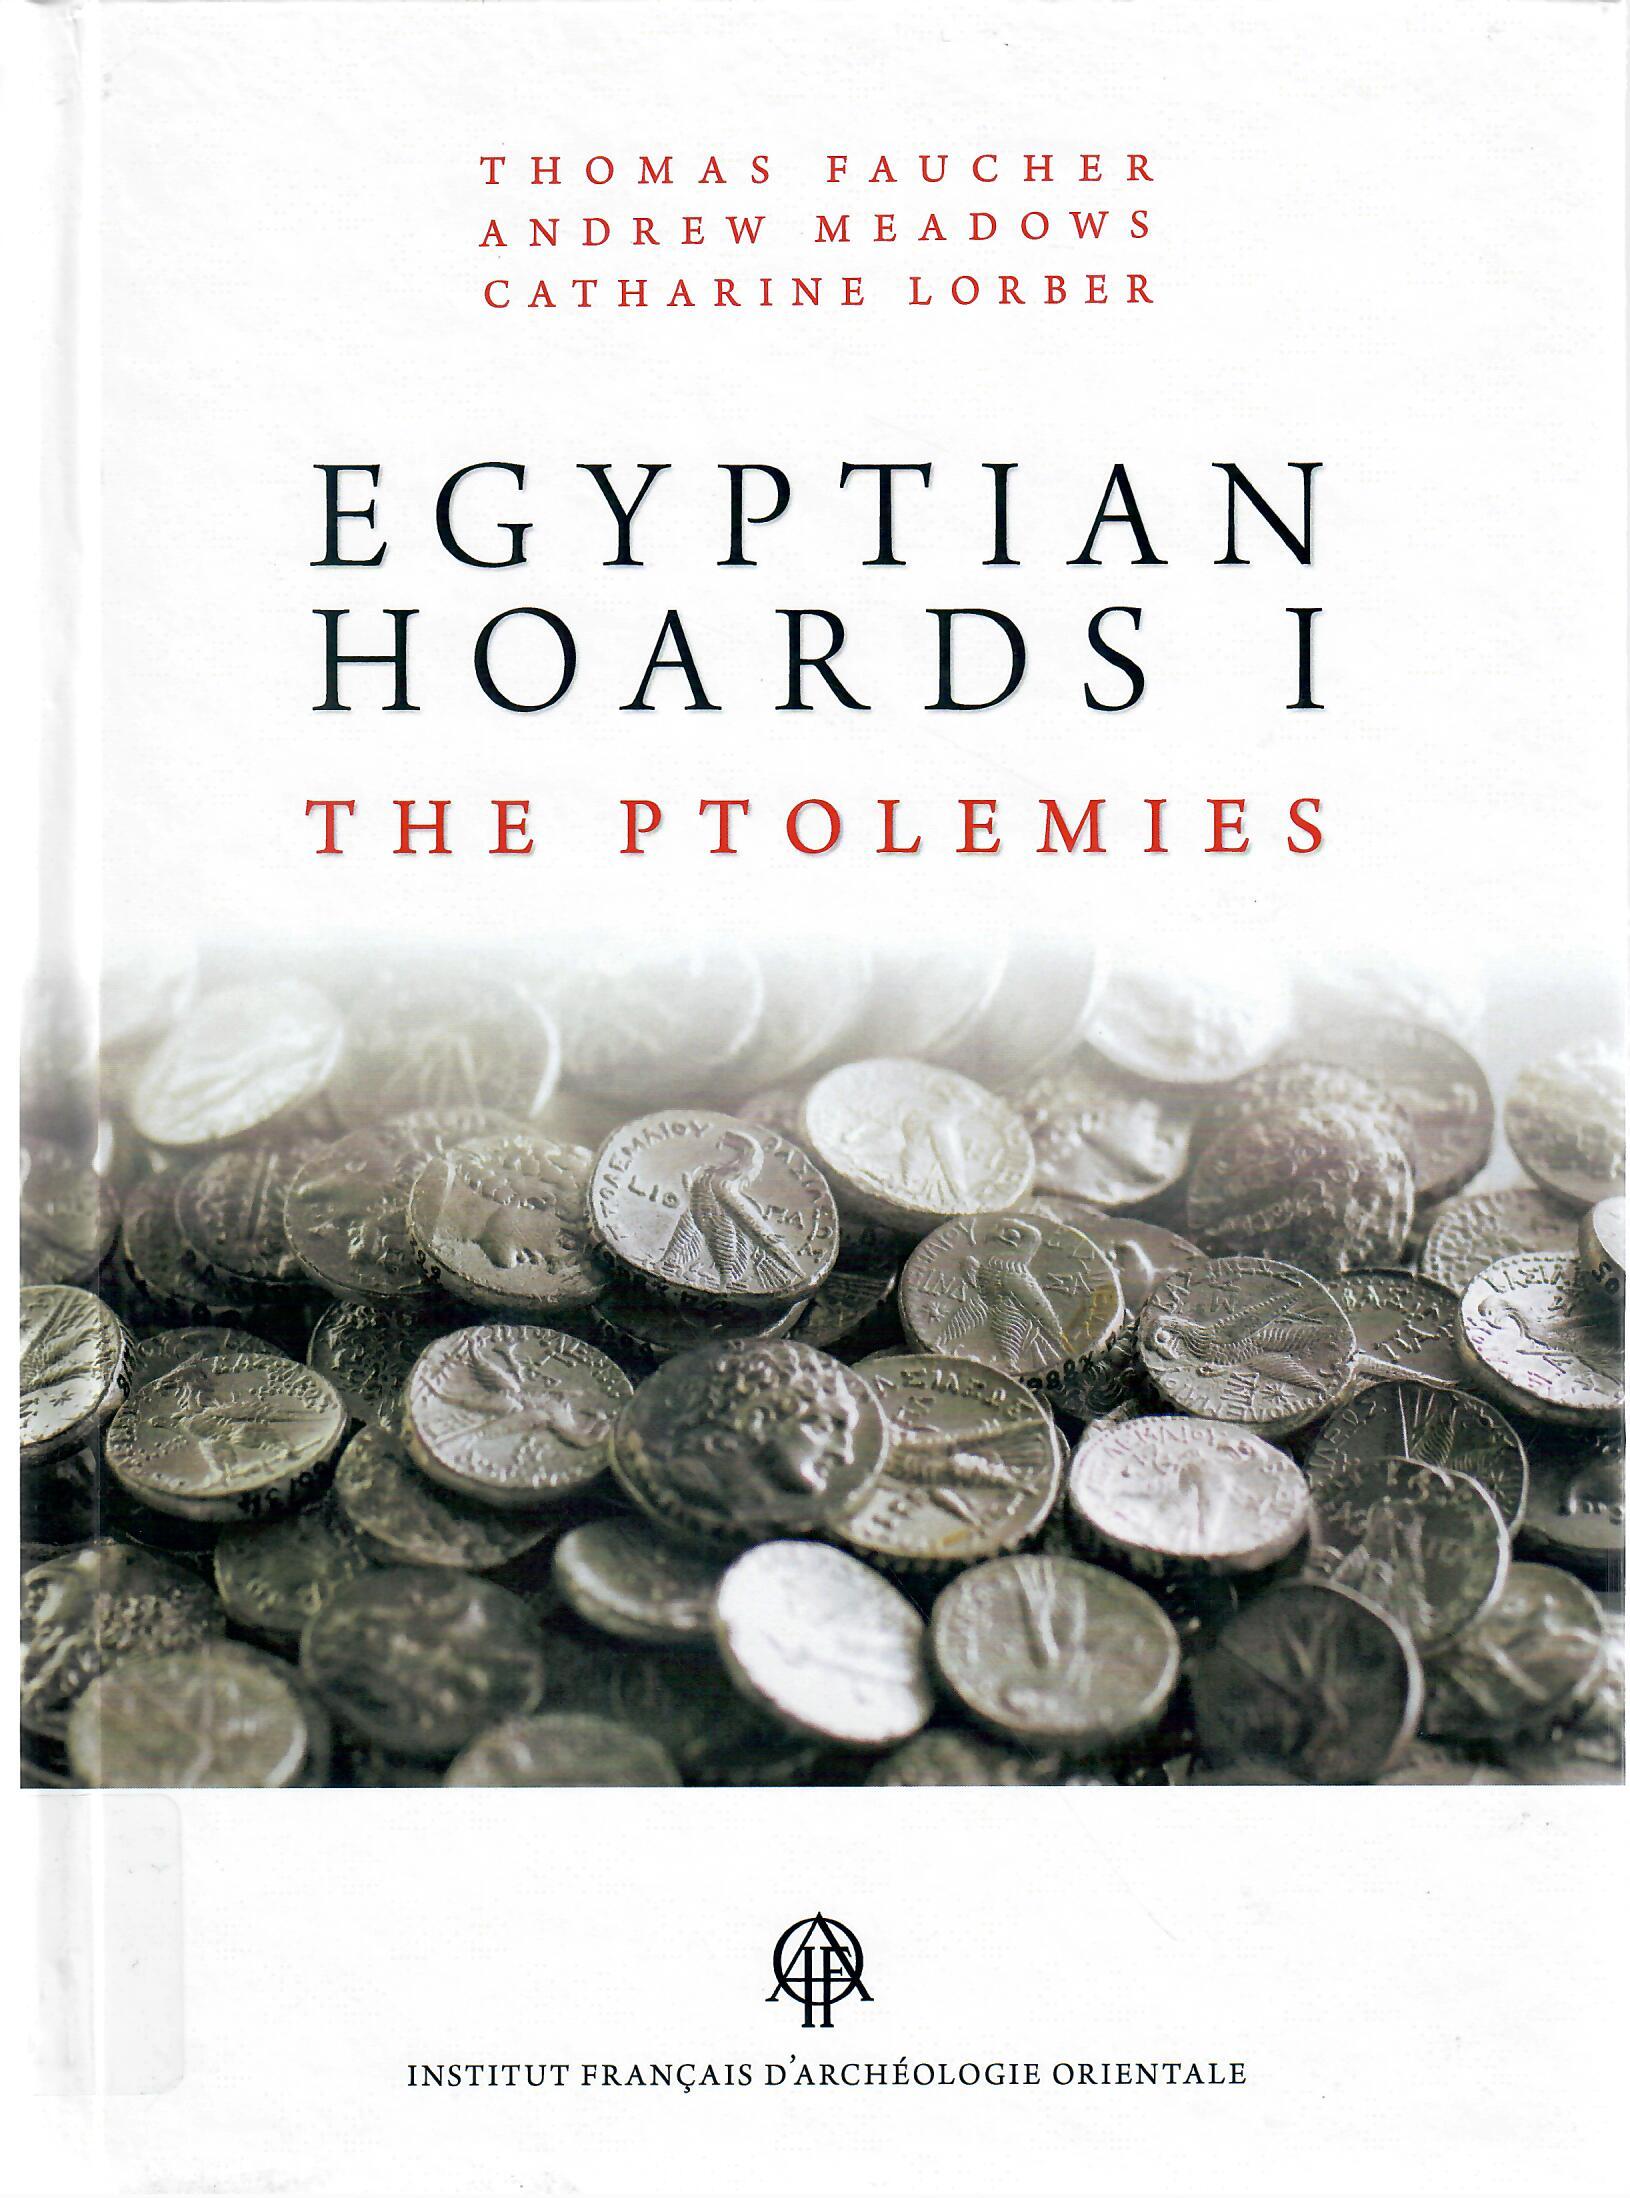 EGYPTIAN HOARDSI THR PTOLEMIES